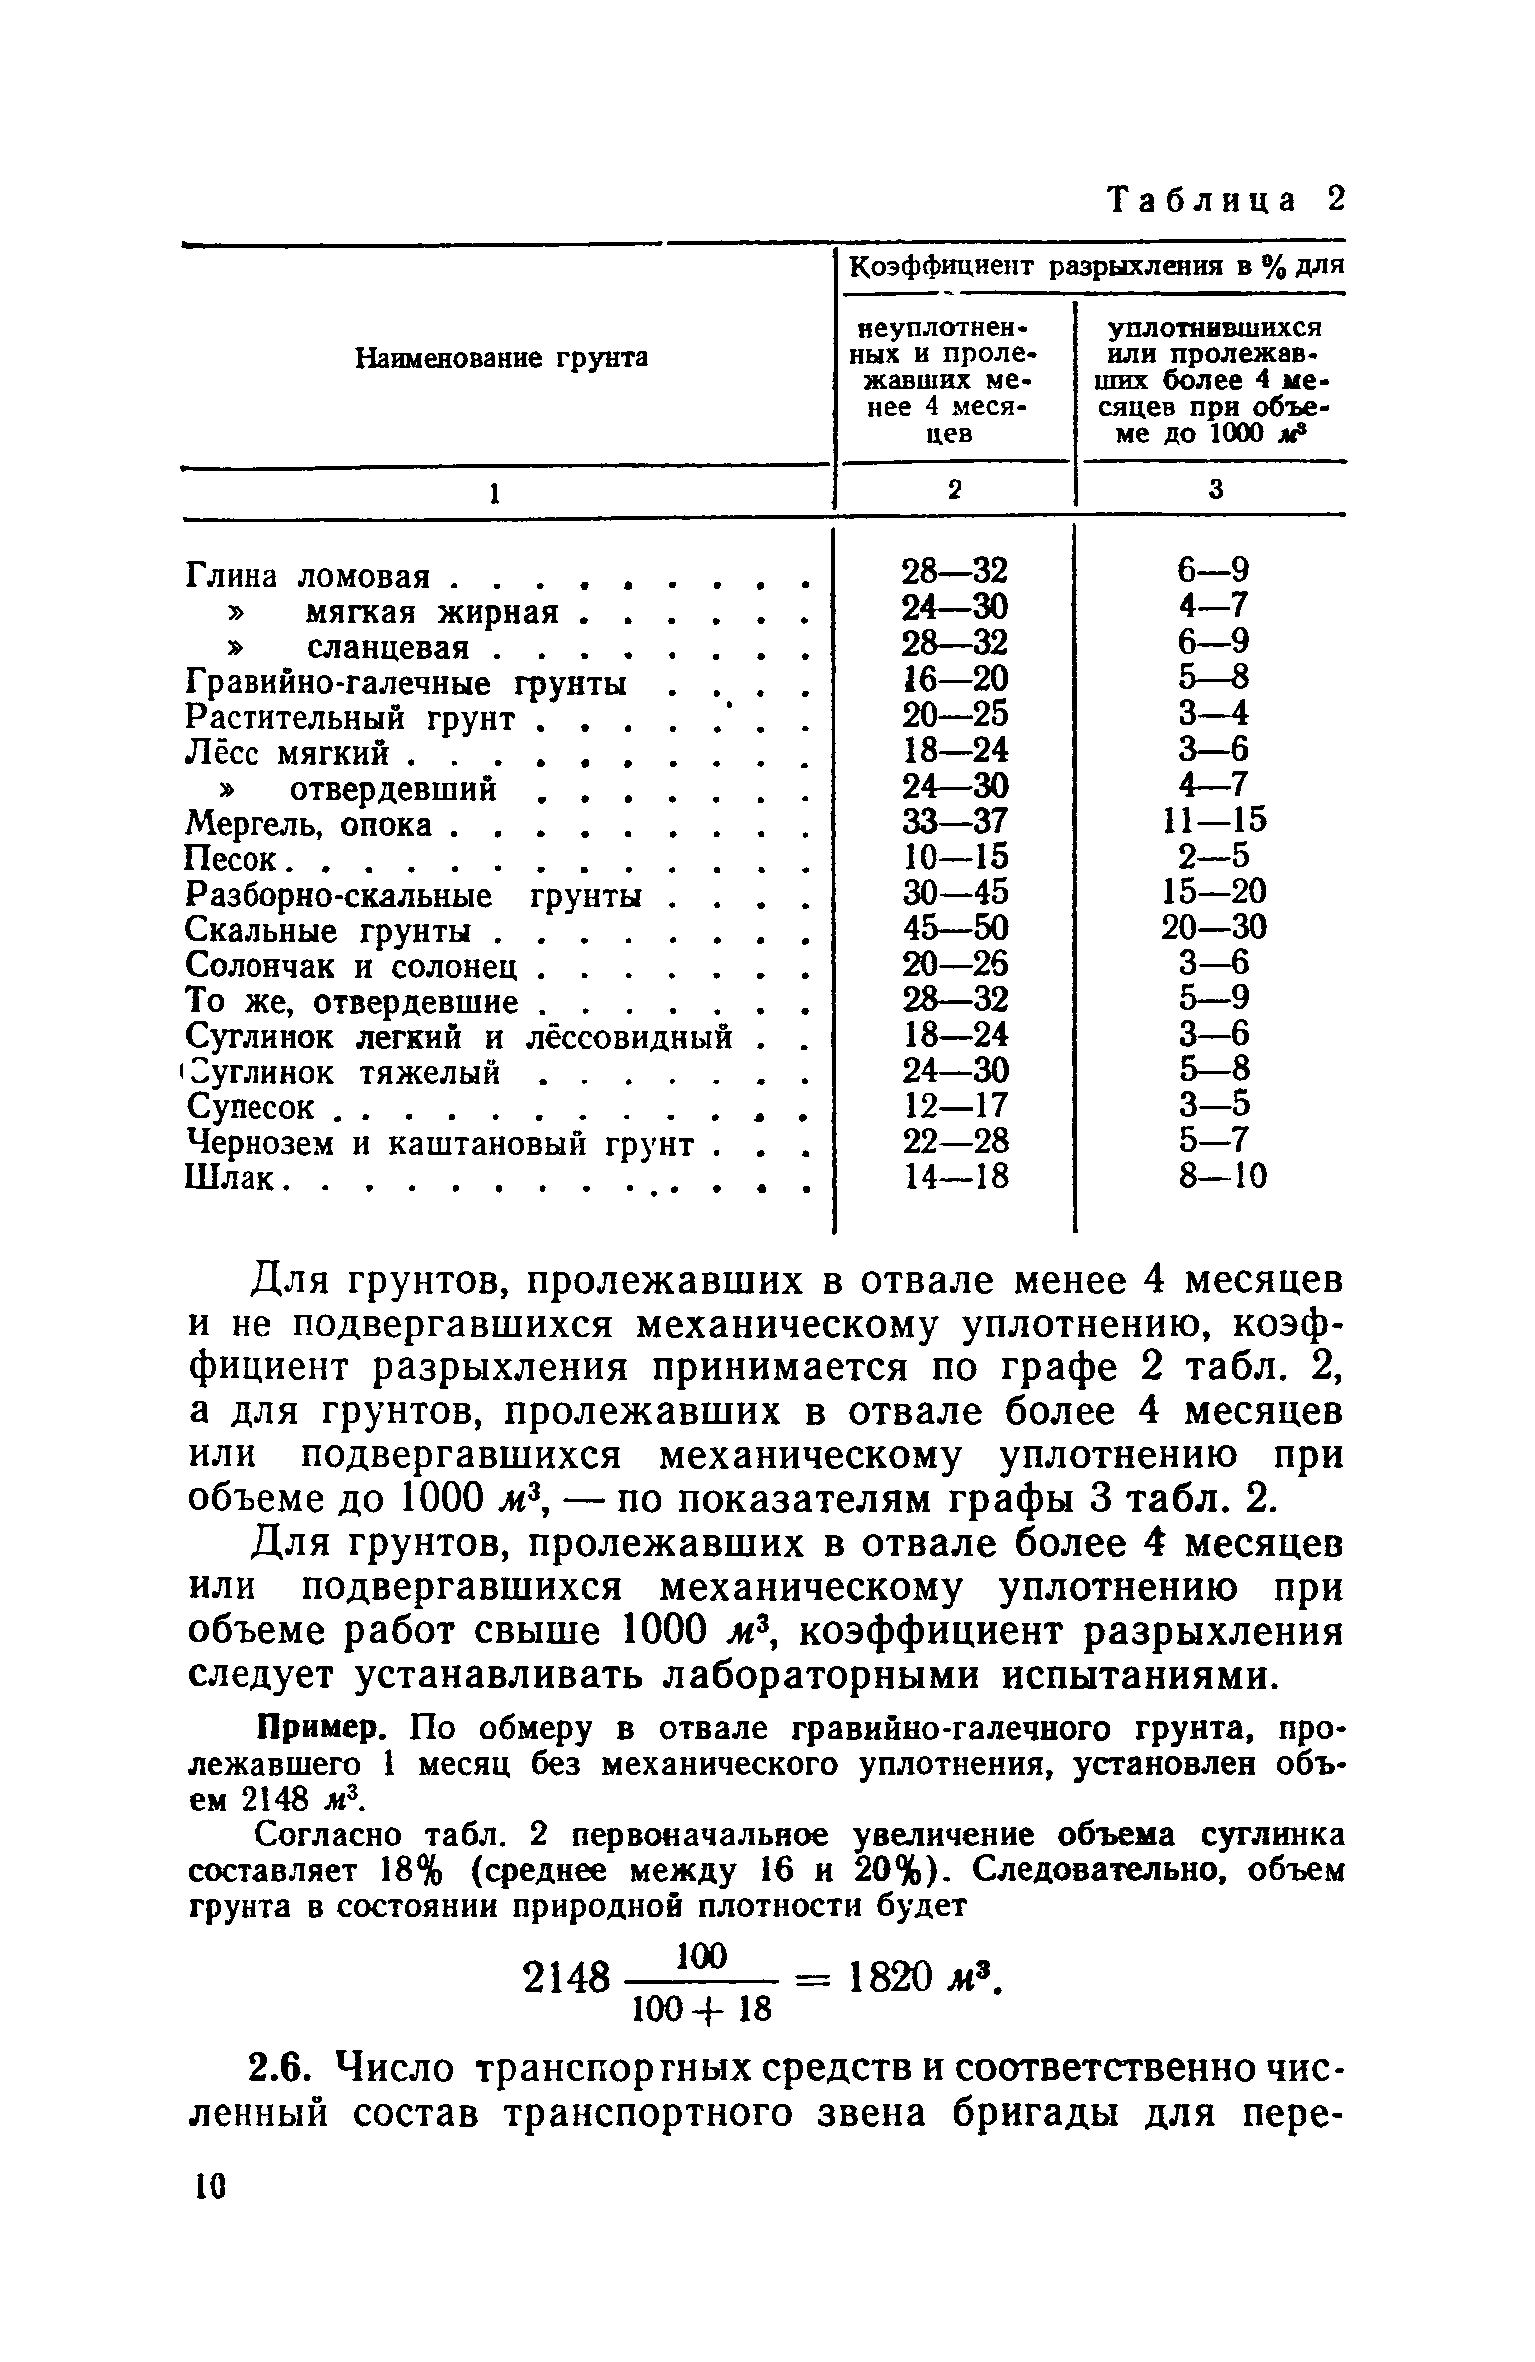 Коэффициенты разрыхления горной породы, наполнения ковша экскаватора (погрузчика) и экскавации (по енв 1989г.)